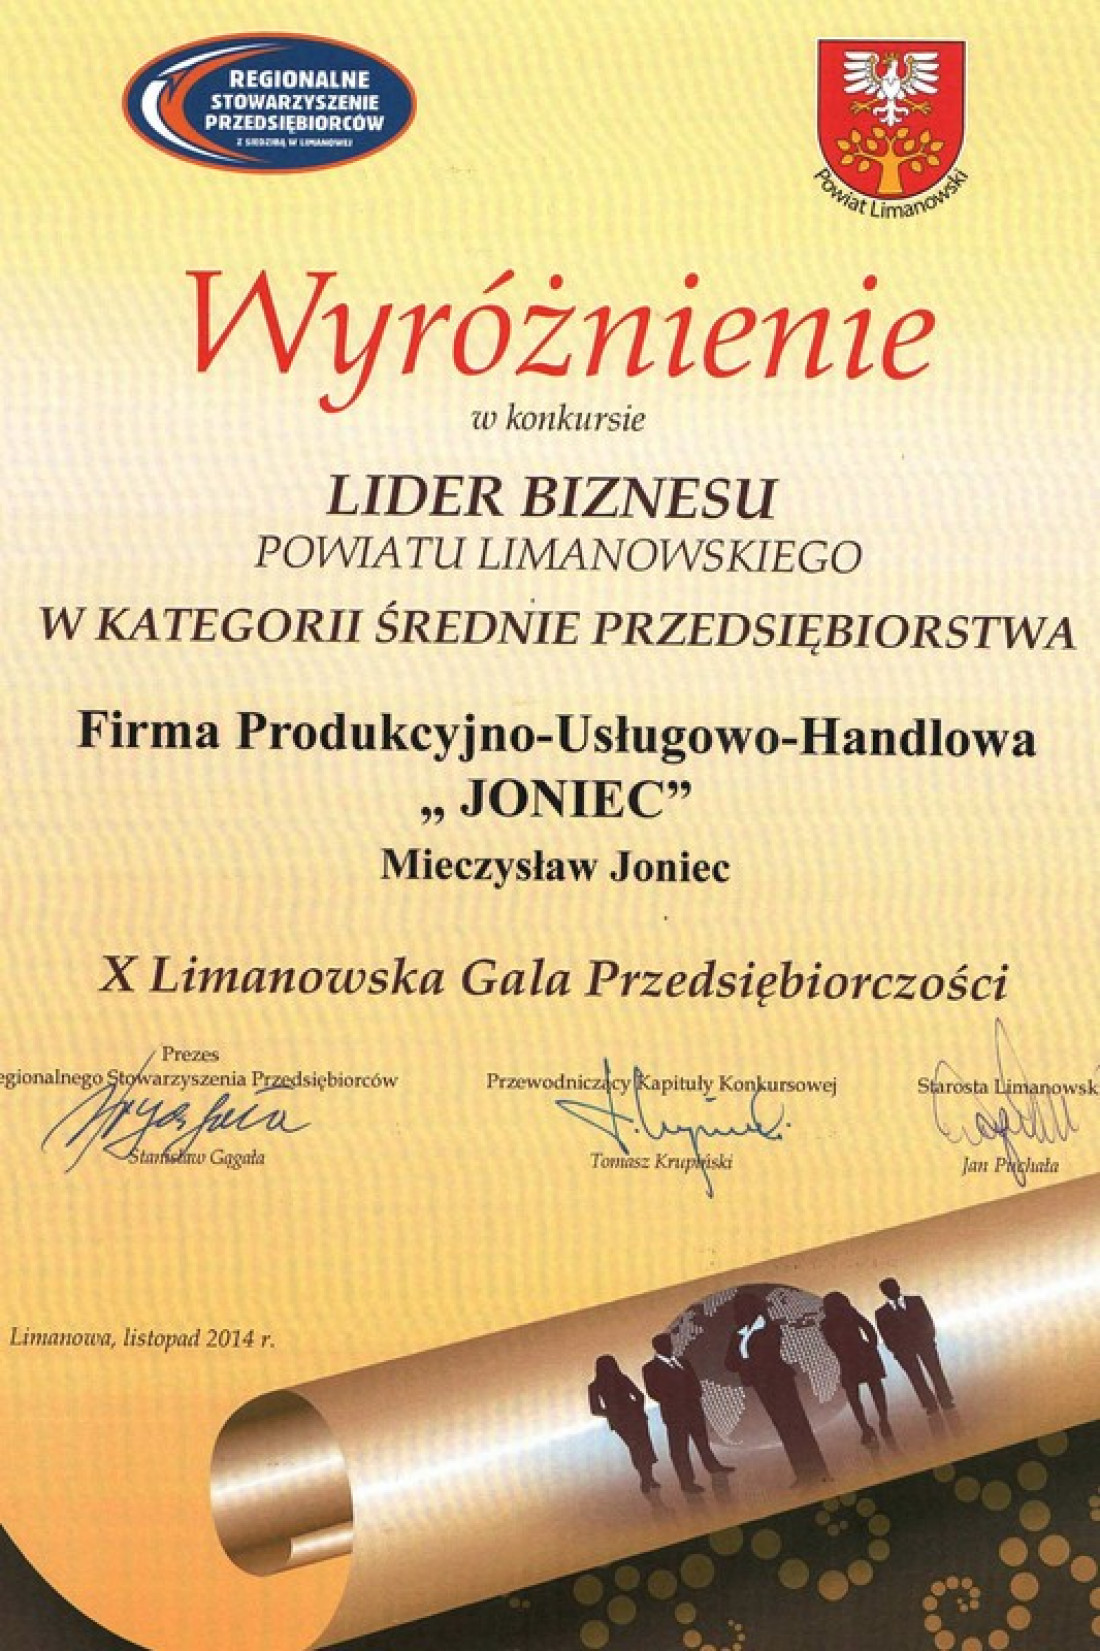 JONIEC wyróżniony w konkursie LIDER BIZNESU Powiatu Limanowskiego